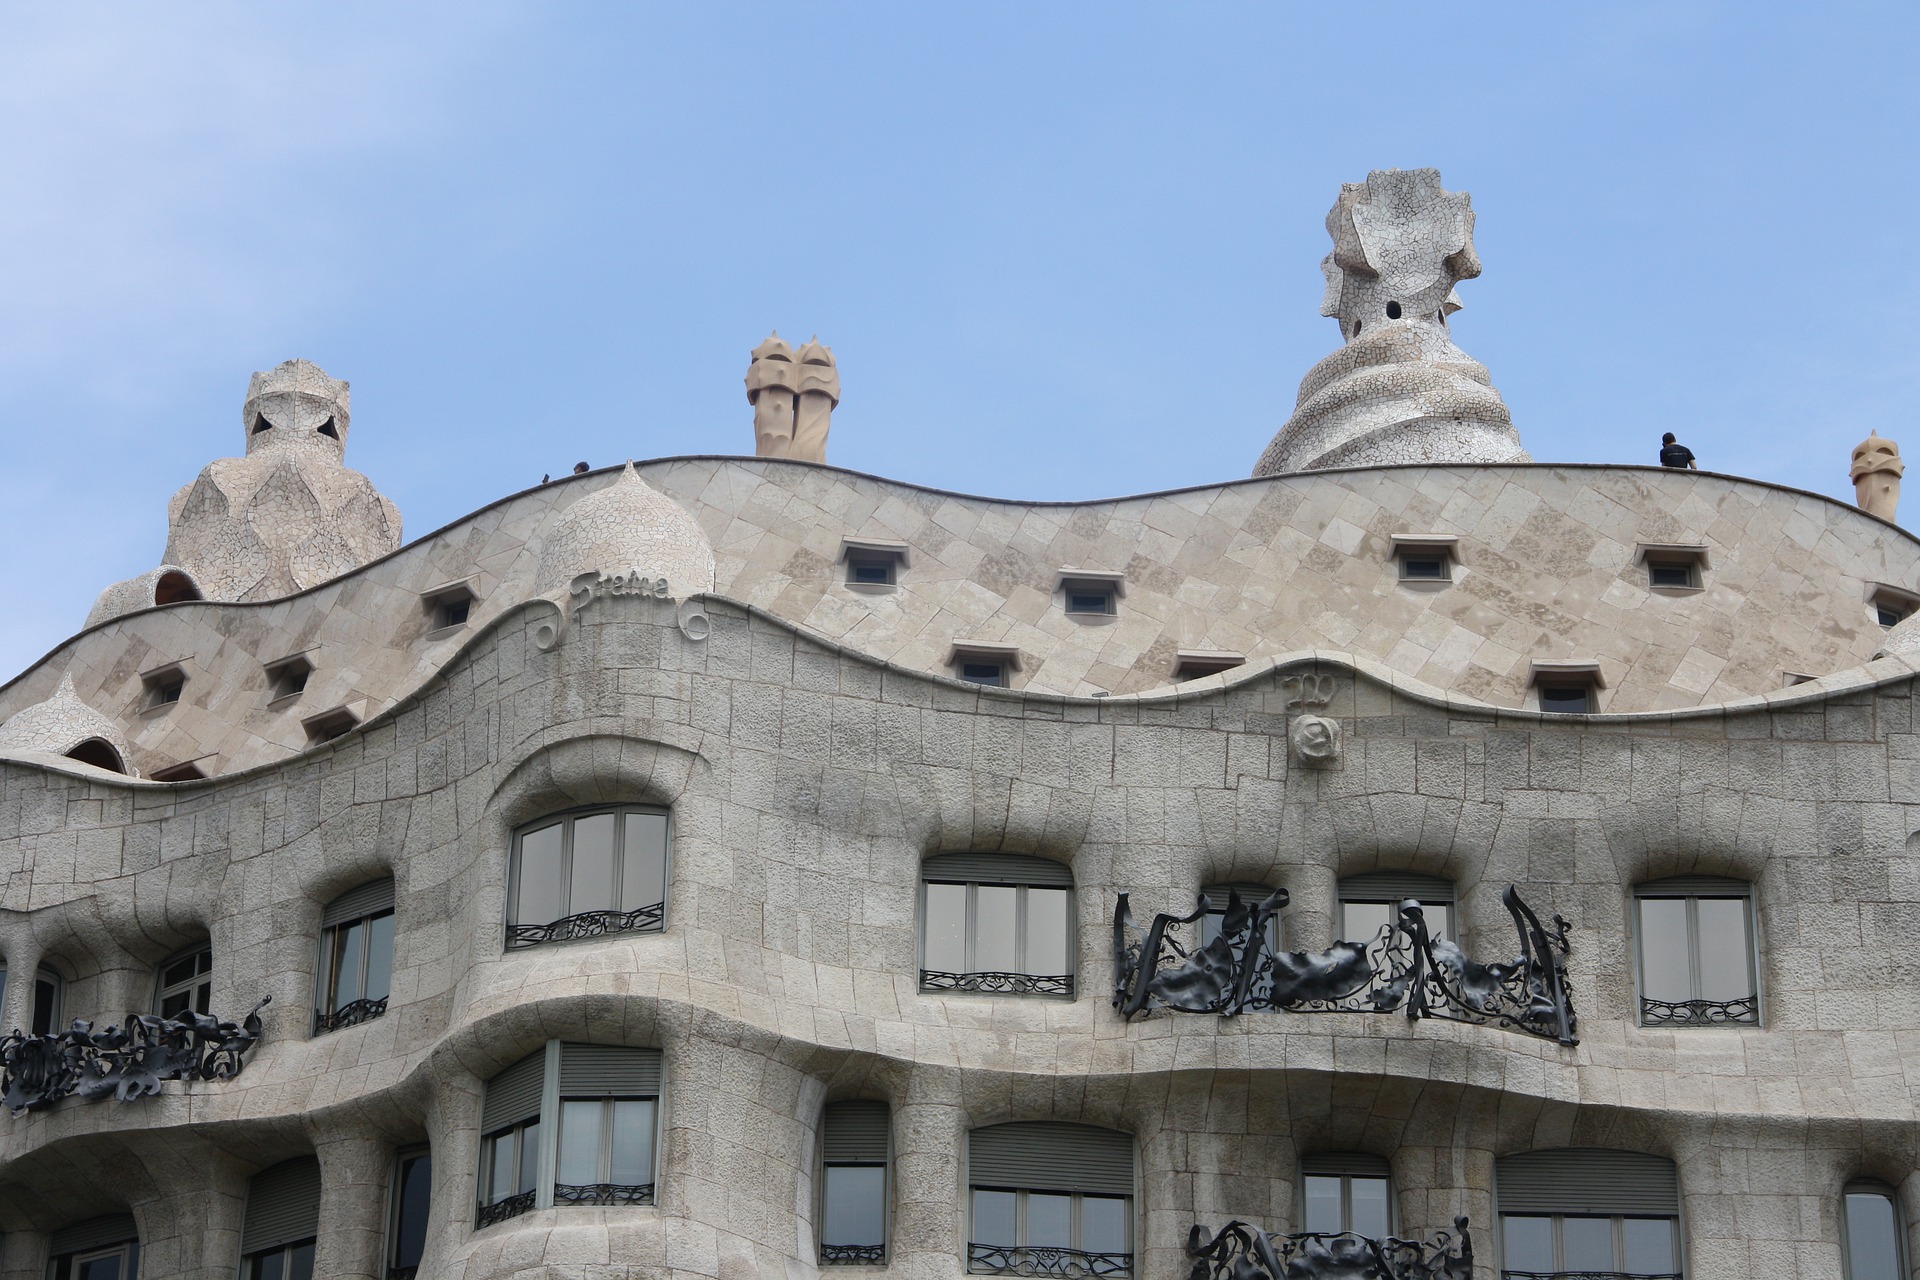 La Pedrera - Casa Milà de Antoni Gaudí